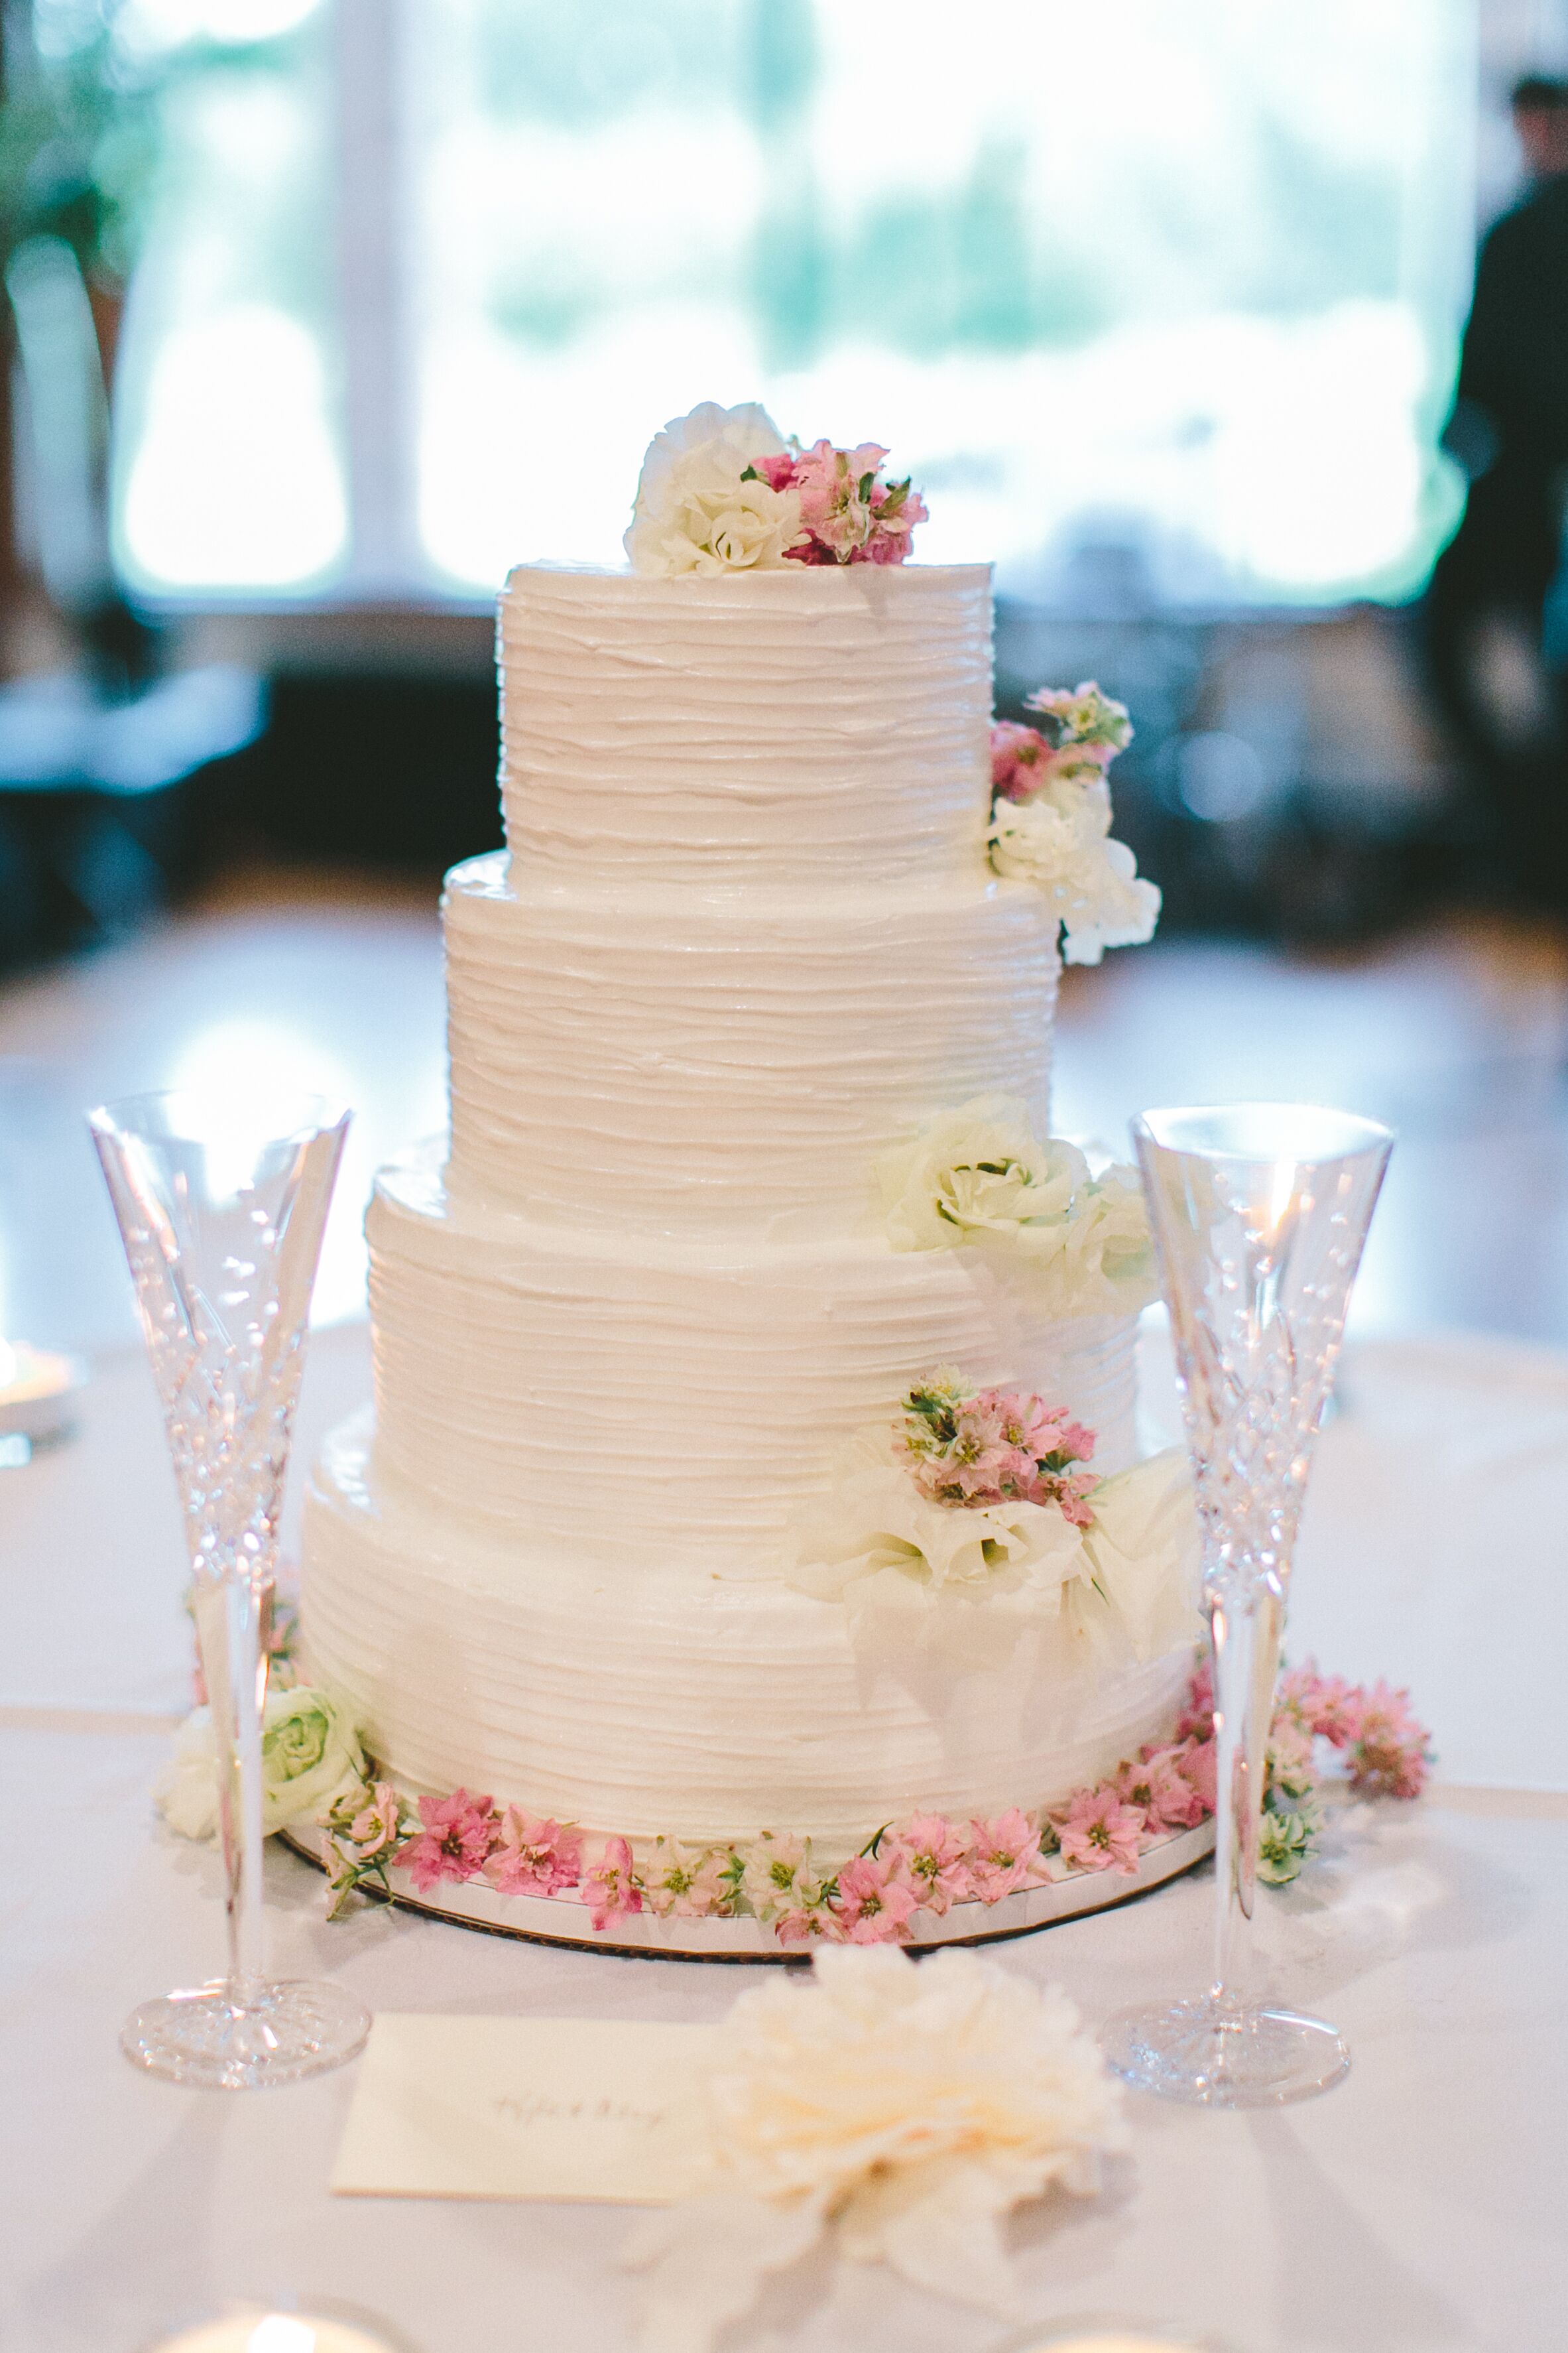 Buttercream Flower Wedding Cake Tutorial Cake Style Youtube